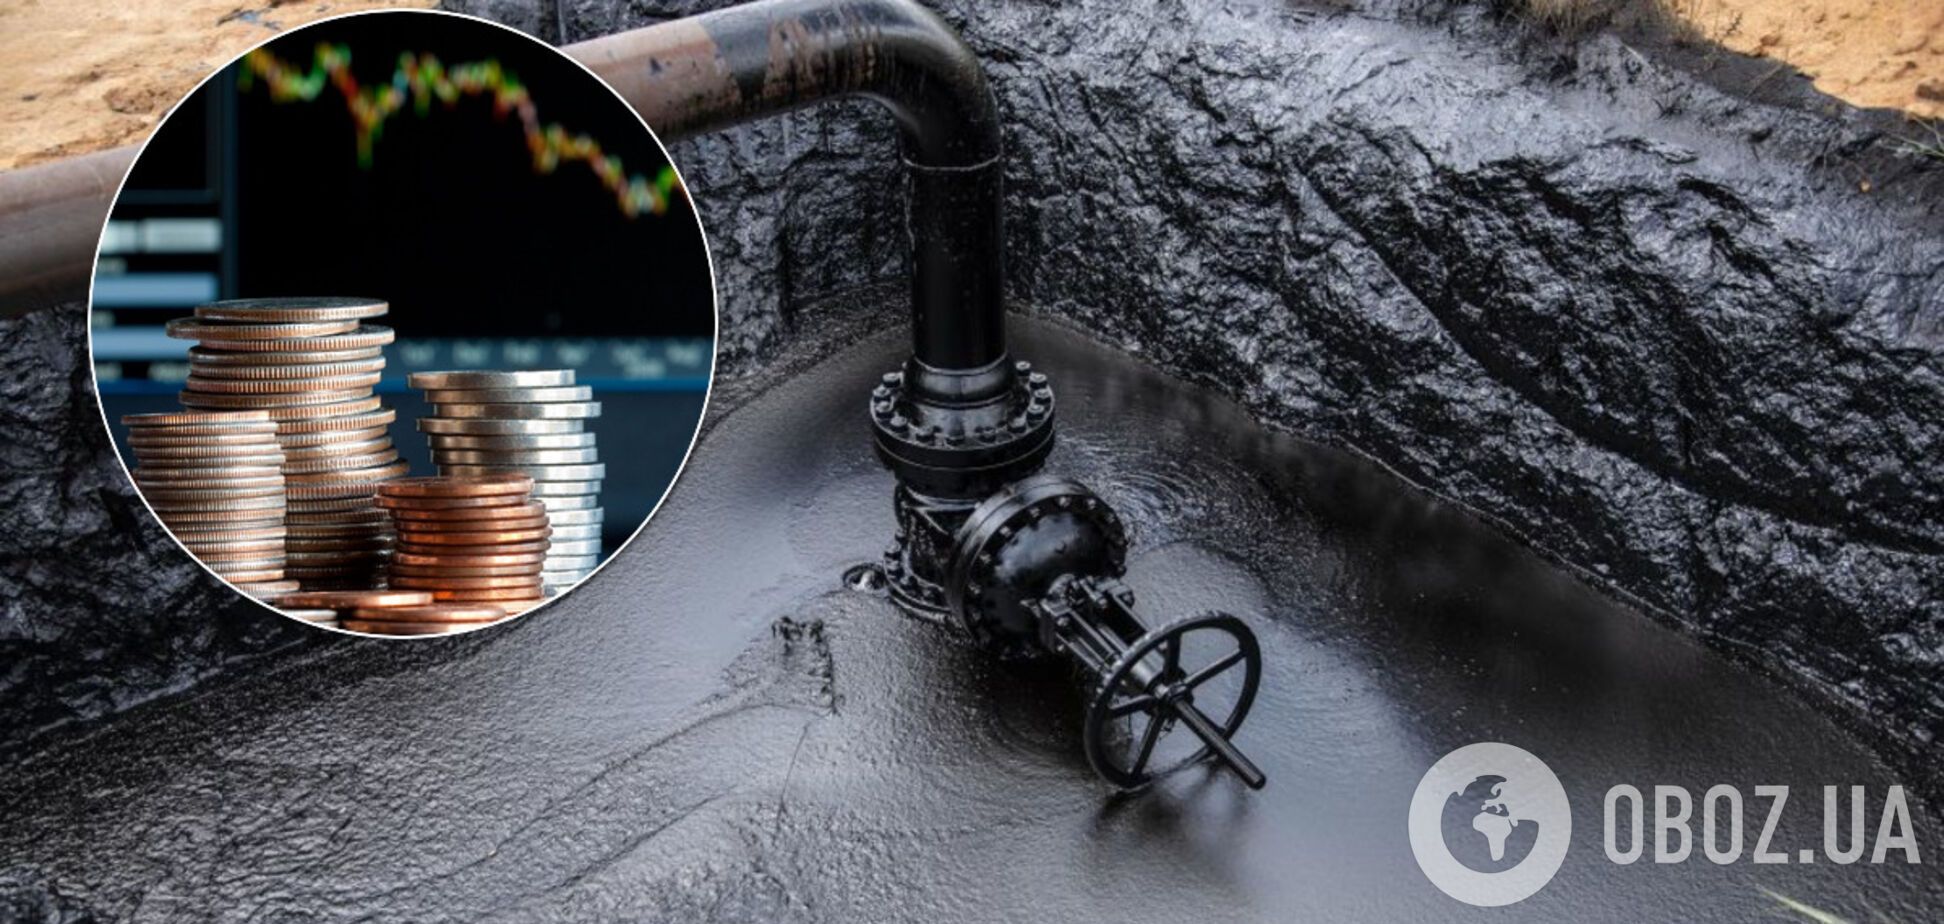 Цены на нефть пошли вверх после падения: на сколько подорожал Brent